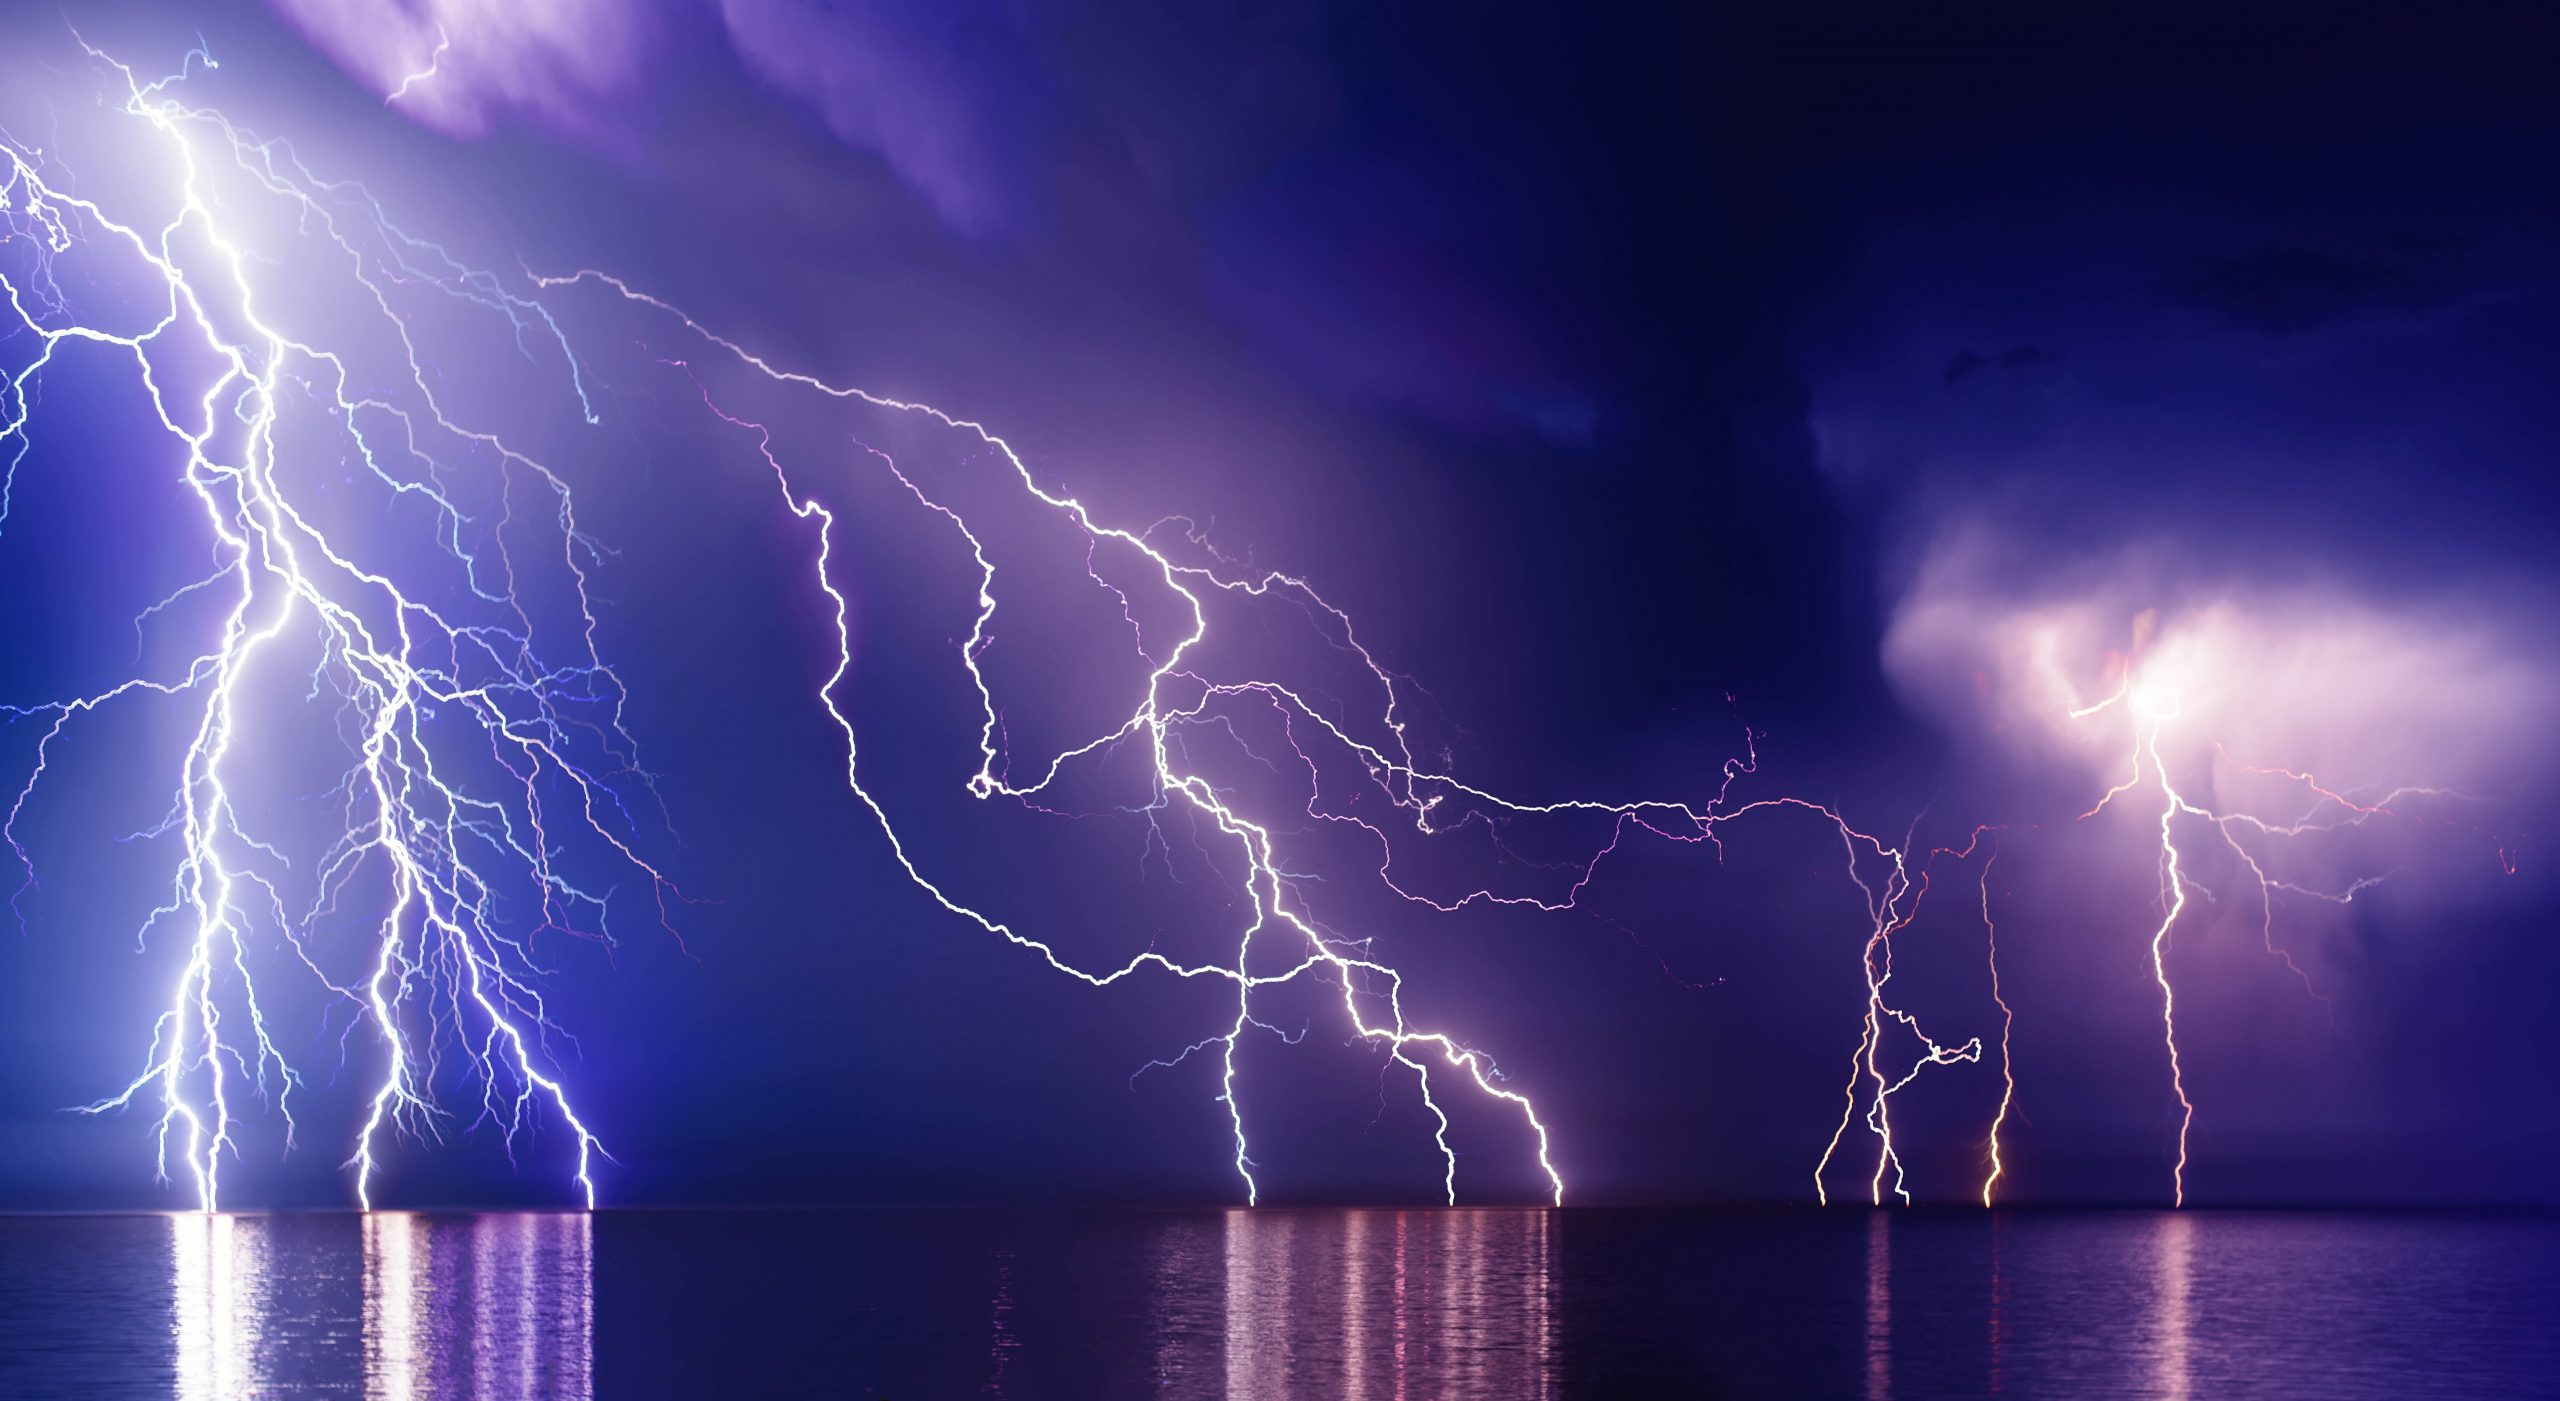 Fractal Lightning Strike Electricity